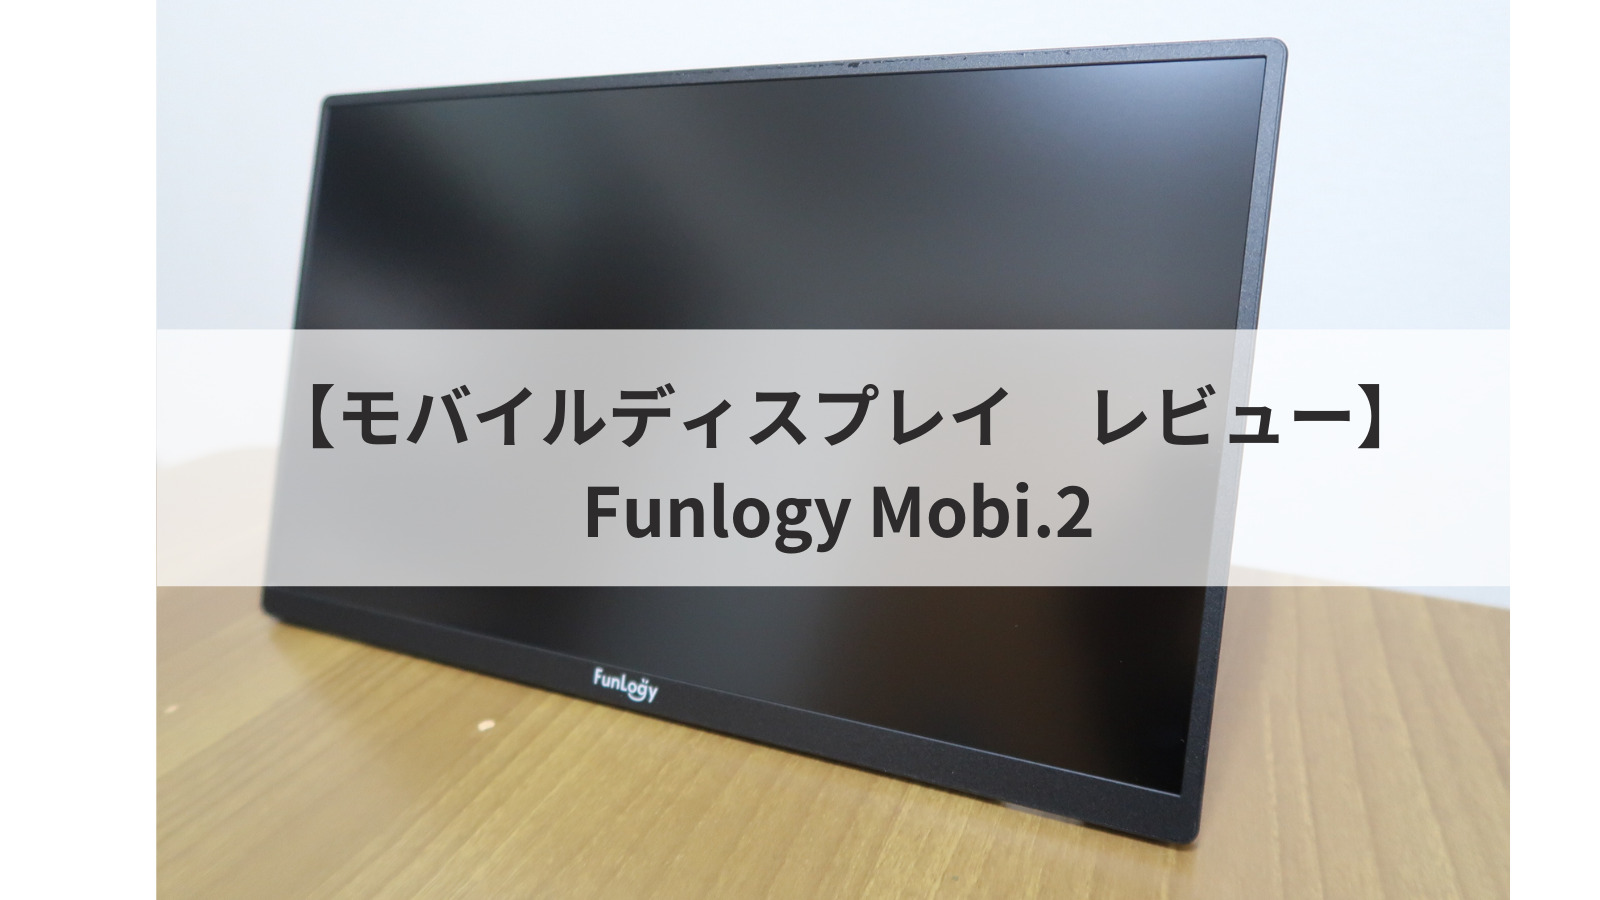 FunLogy Mobi.2 モバイルモニター 14インチ ノングレア フルHD